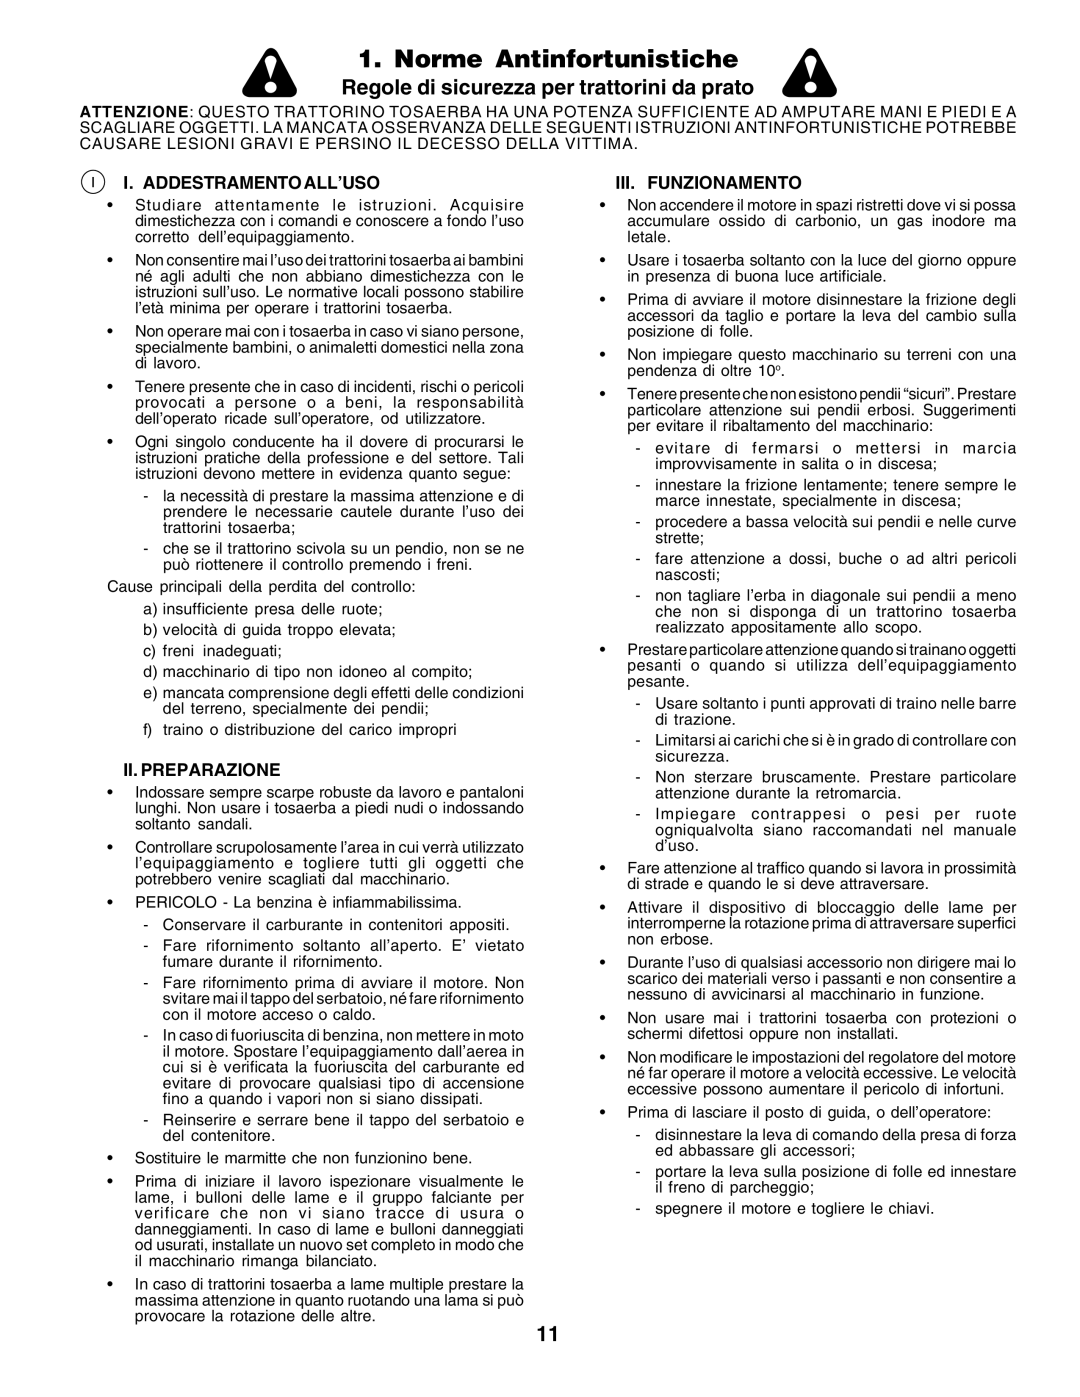 Husqvarna CT135 Norme Antinfortunistiche, Regole di sicurezza per trattorini da prato, I. Addestramento All’Uso 